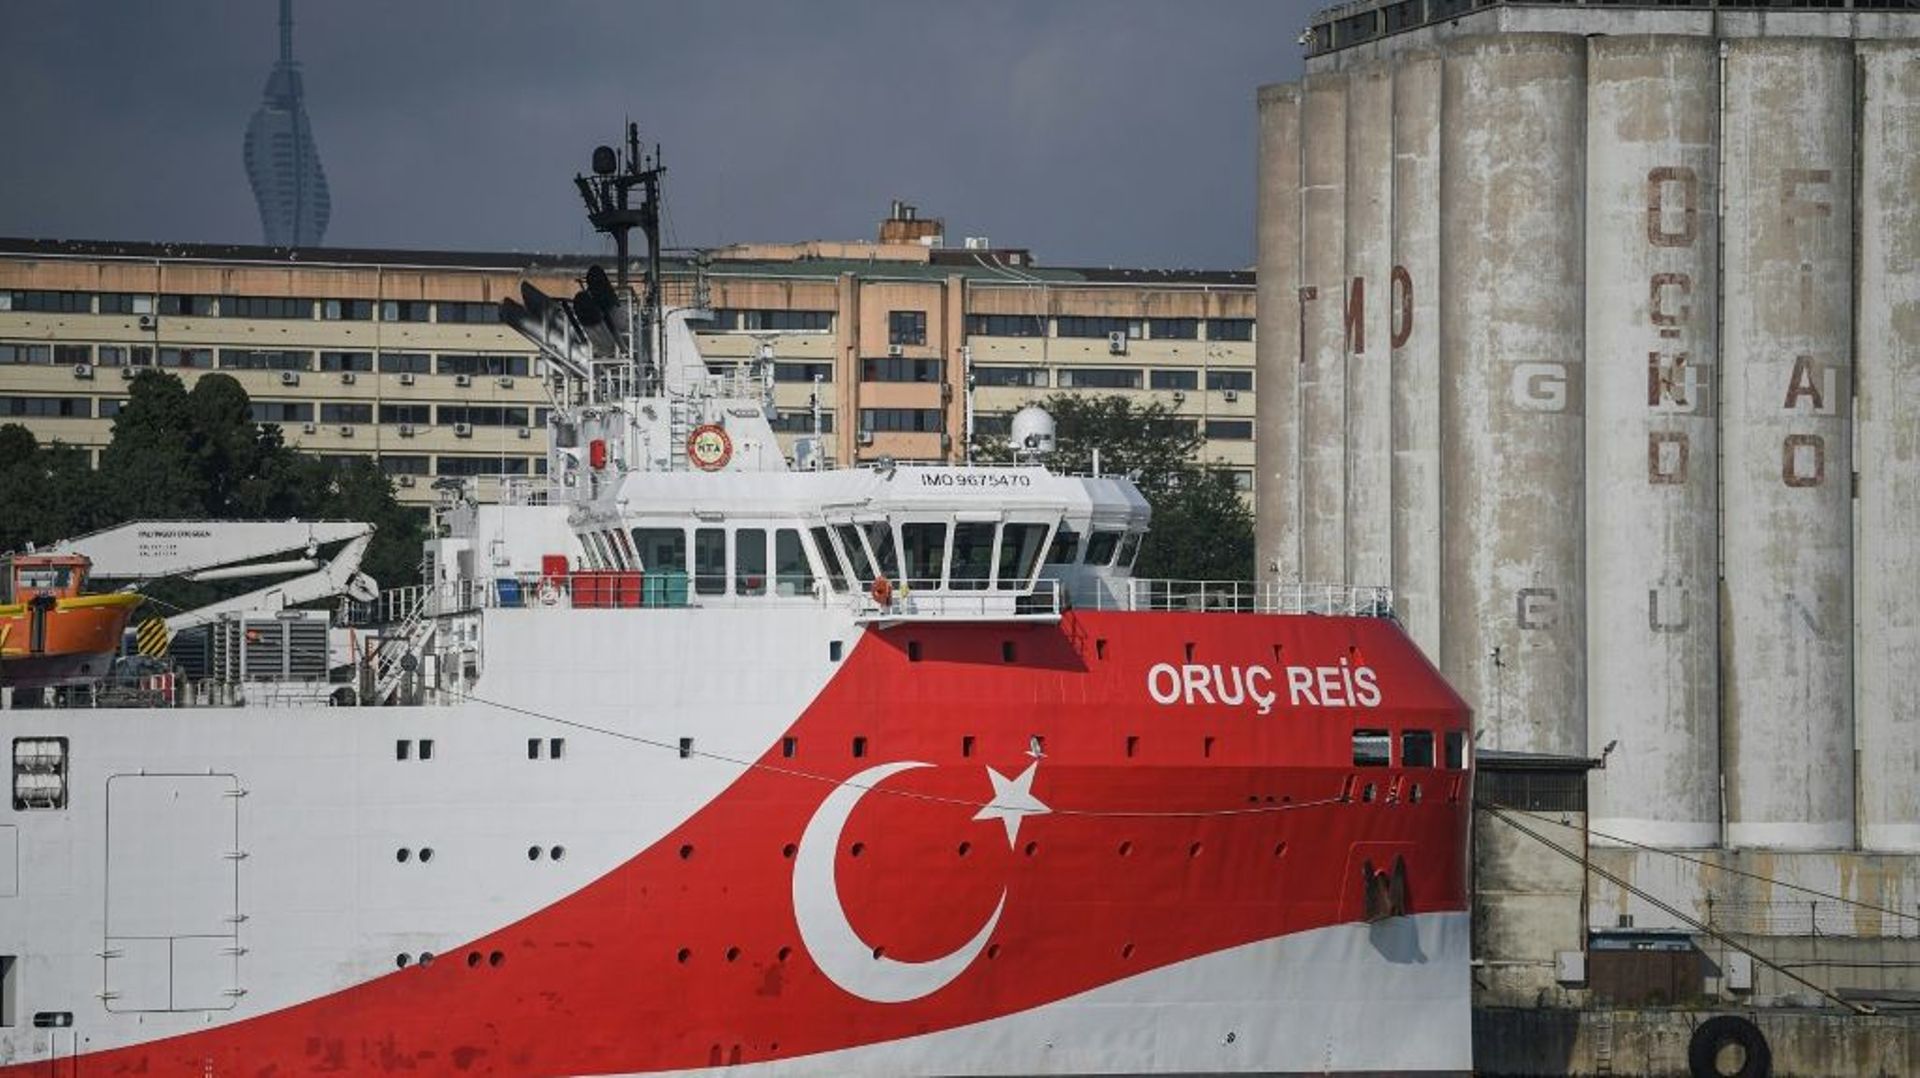 L'Oruç Reis, navire de recherche qu'Ankara a déployé en Méditerranée orientale, provoquant des tensions avec la Grèce, le 23 août 2019 à Istanbul